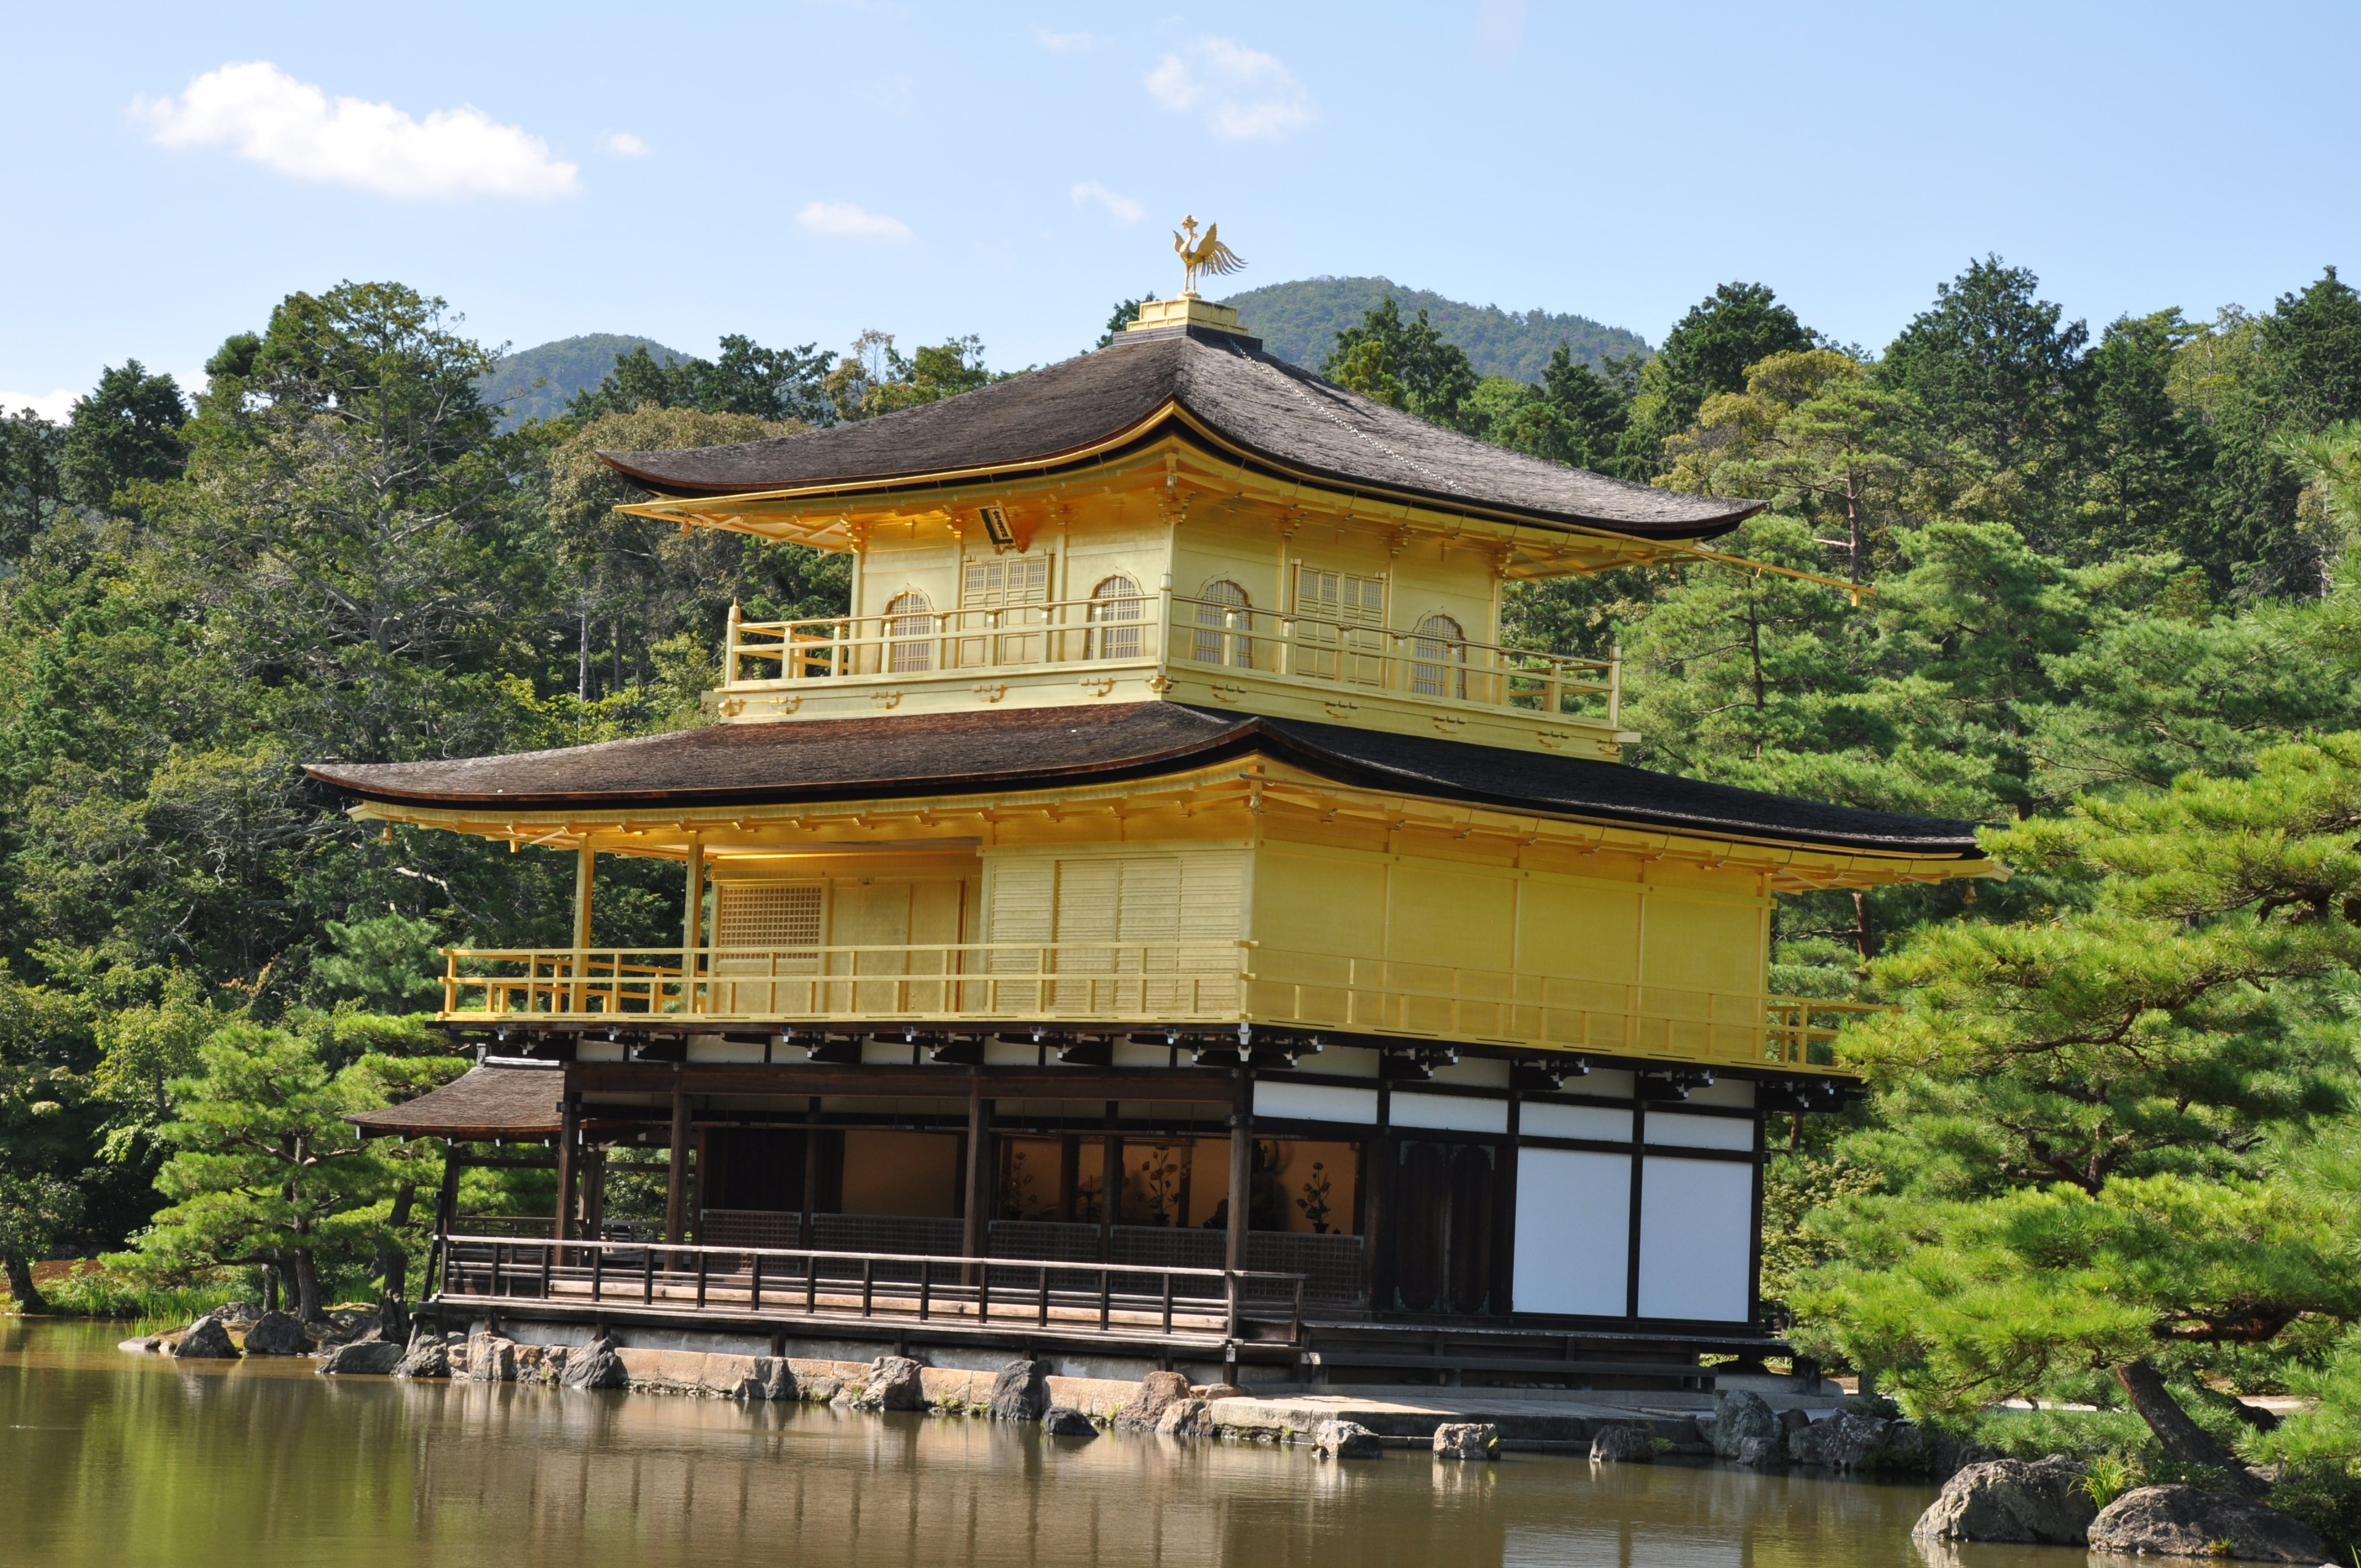 Dette tempelet, som opprinnelig ble bygget på 1300-tallet for en shogun, og som deretter er blitt bygget opp igjen to ganger, er i dag et buddhistisk tempel hvis to øverste etasjer er dekket av gull.